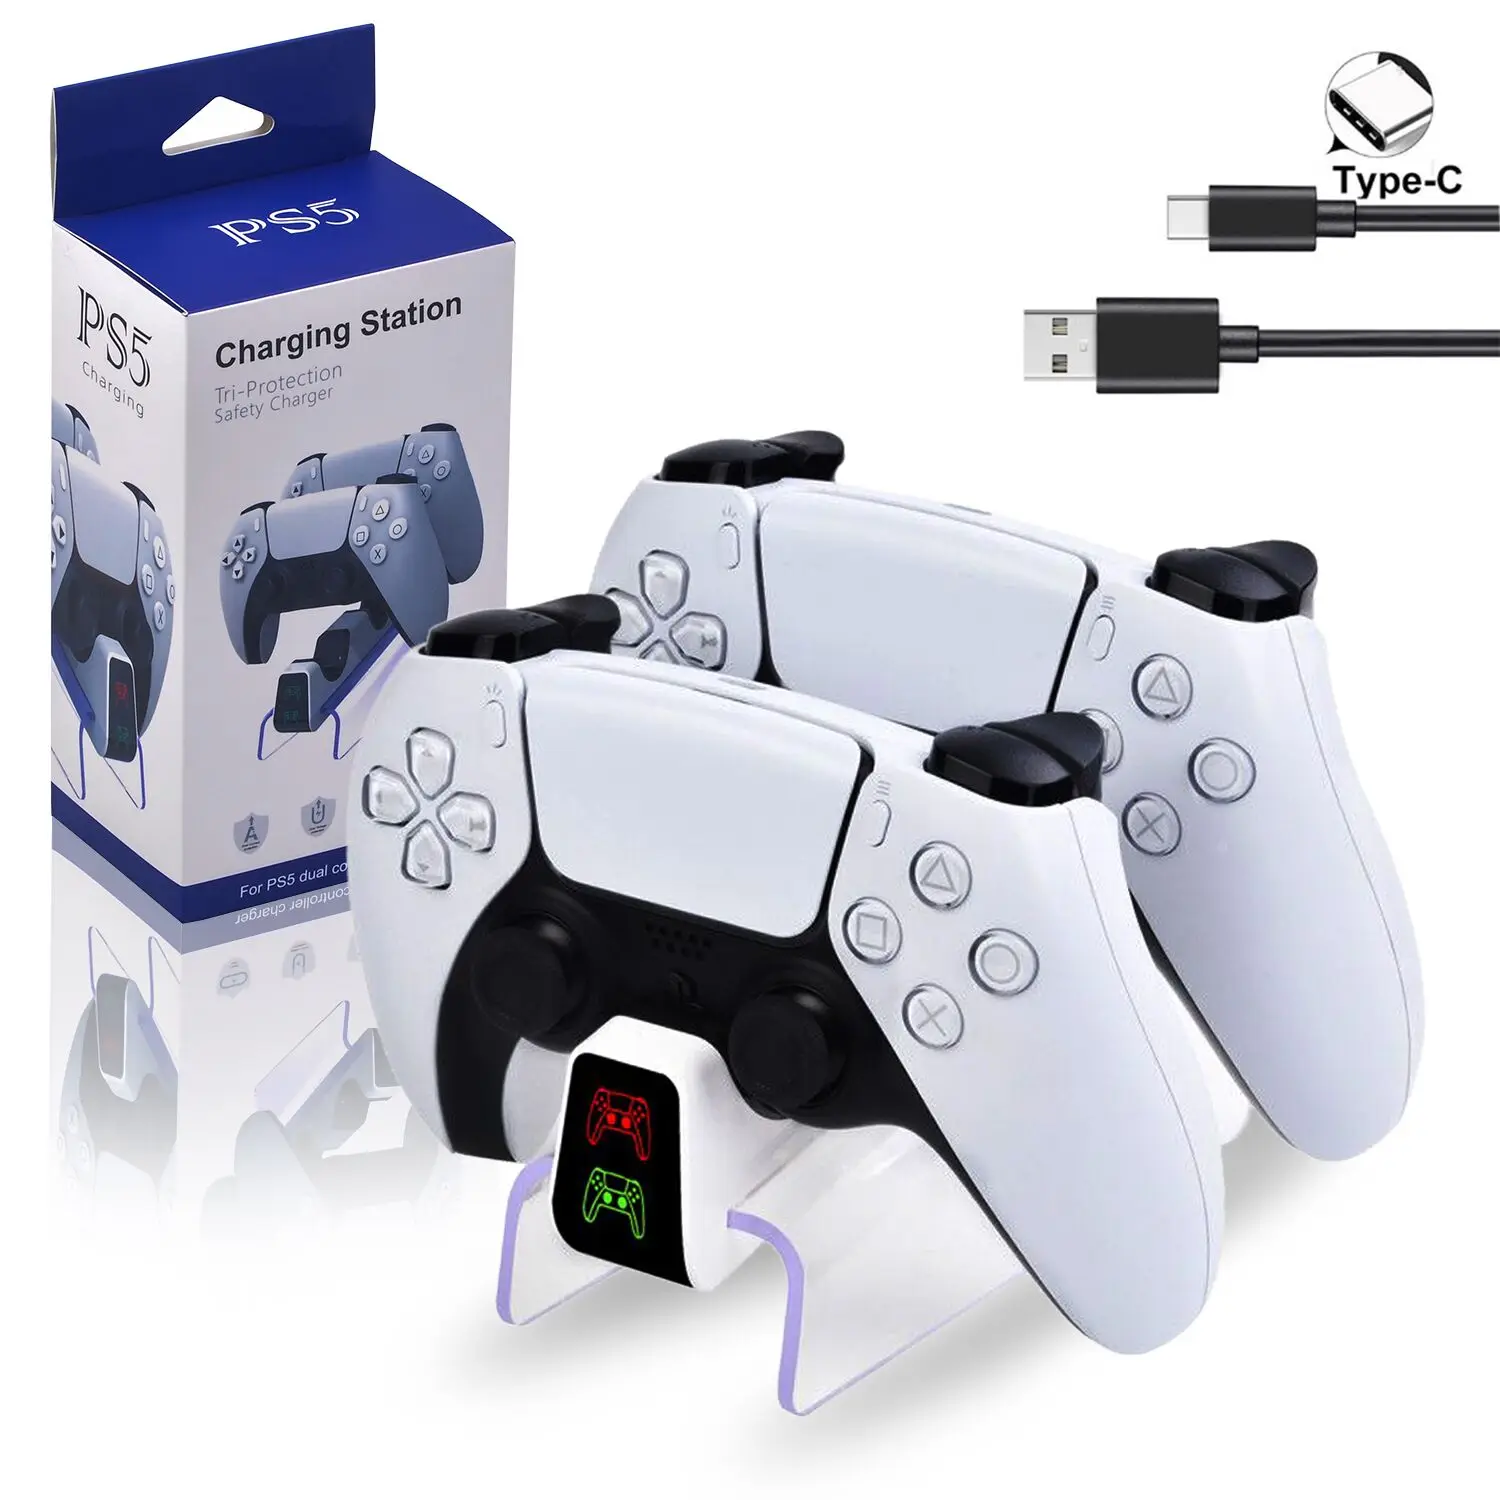 Brzi Punjač za Bežični kontroler Sony PlayStation5 Type-C, USB Dvostruko Punjenje Postoljem priključne stanice za punjenje kontrolera PS5 Slika  3